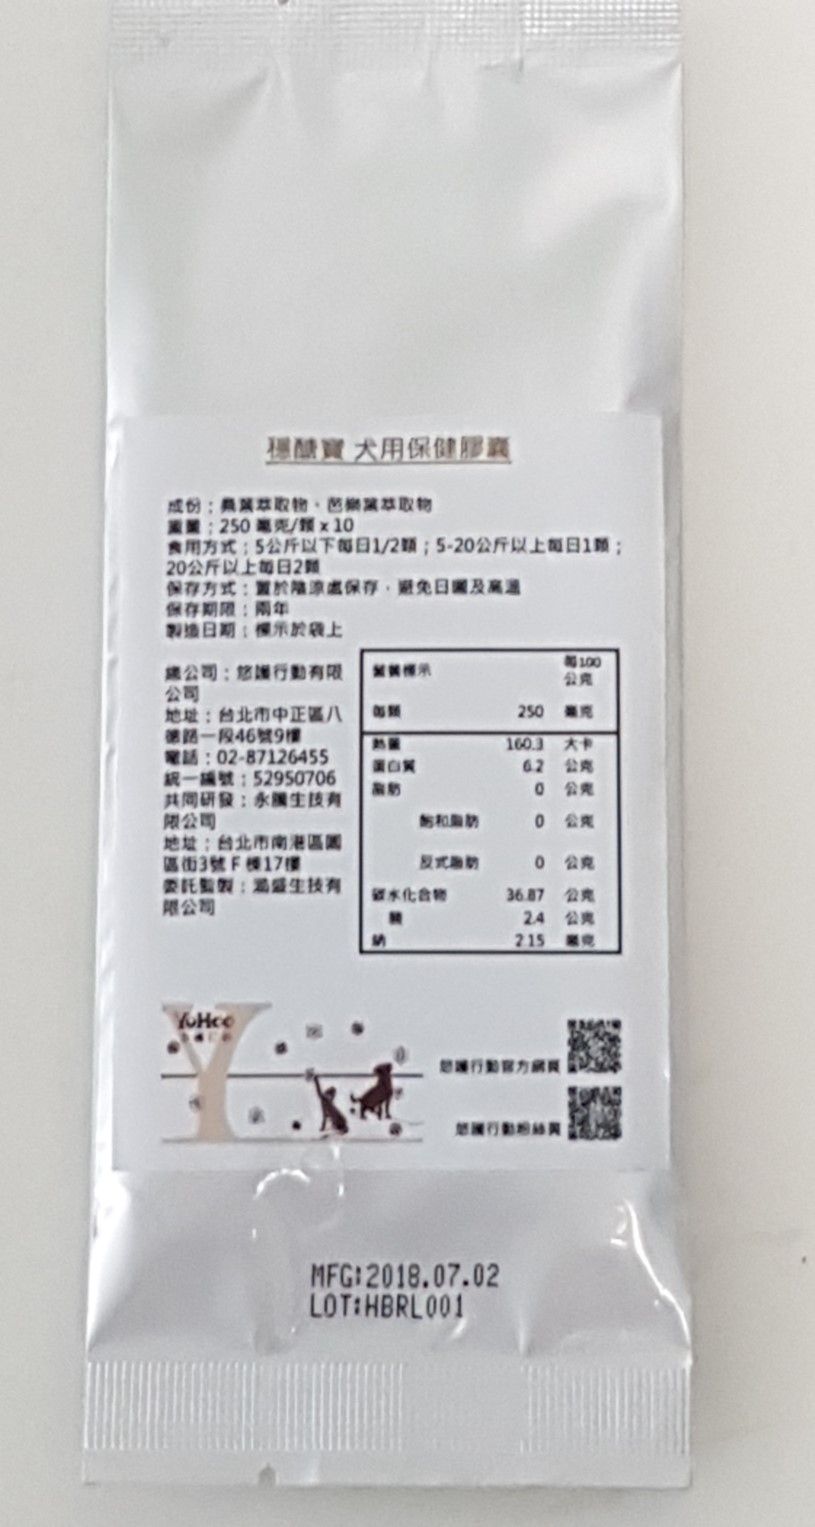 護醣寶 犬用保健膠囊


※ 本項產品已於 2019 年 06 月04 日 停止輸入/製造/加工 ※